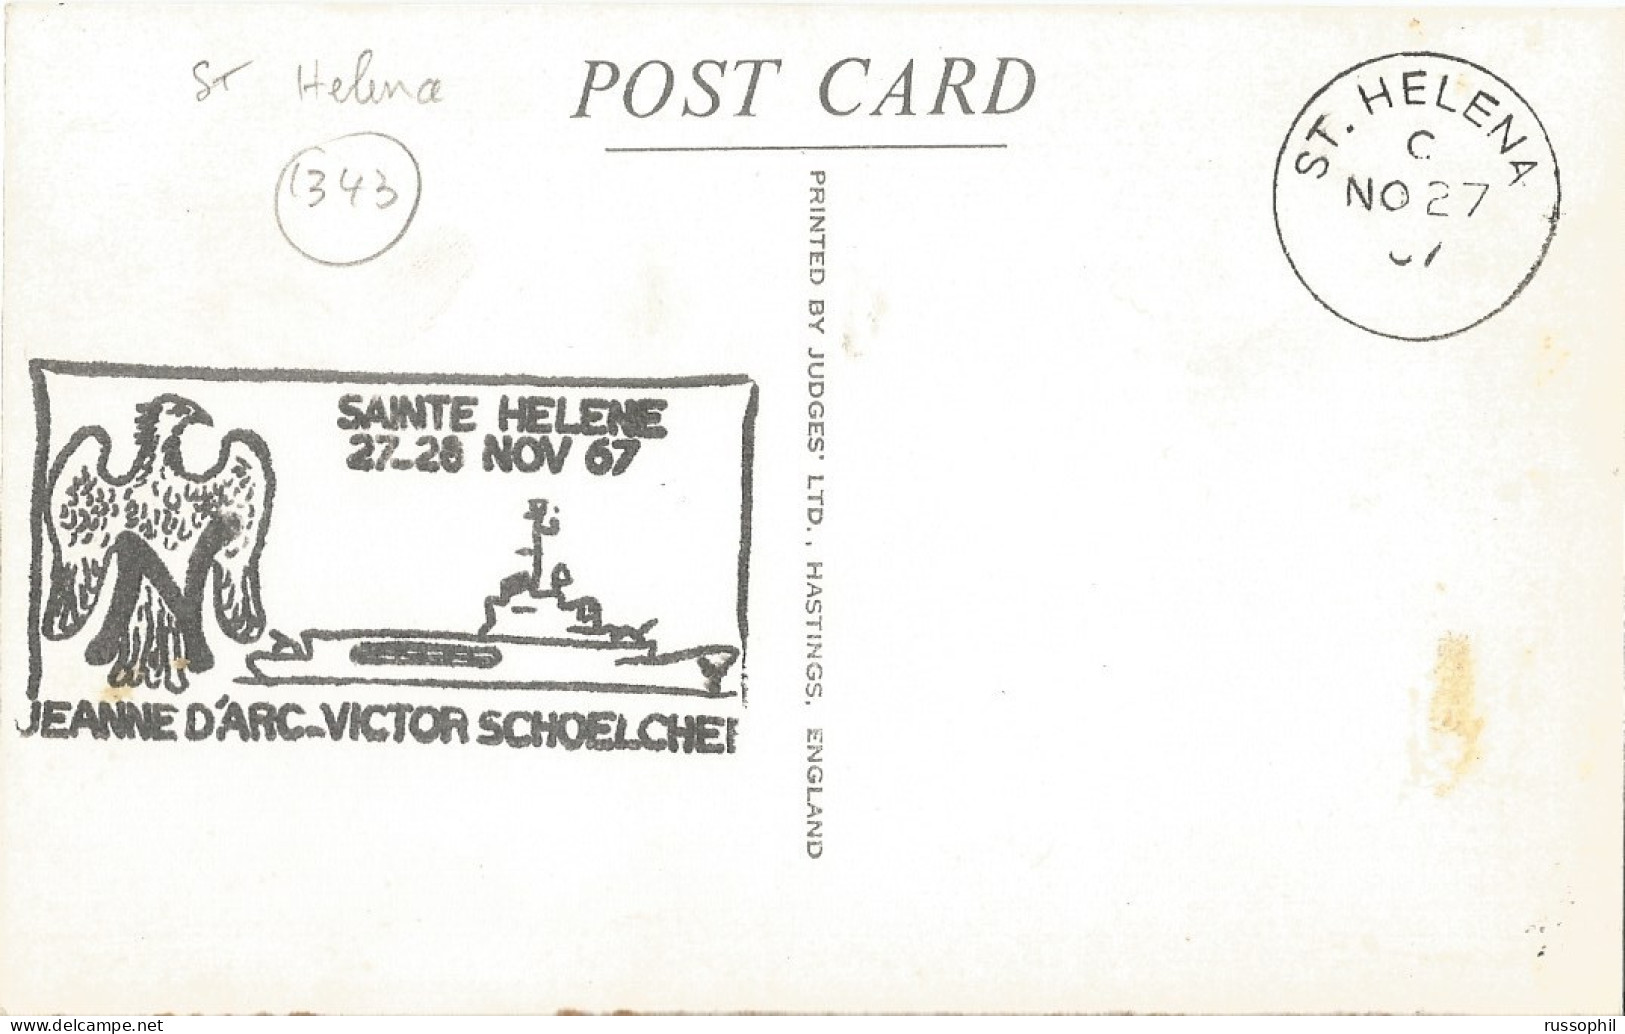 ST HELENA - JACOB'S LADDER, 699 STEPS - PUB. JUDGES LTD, HASTINGSREF REF #2  - FRENCH WAR SHIP " JEANNE D'ARC " - 1967 - Sint-Helena